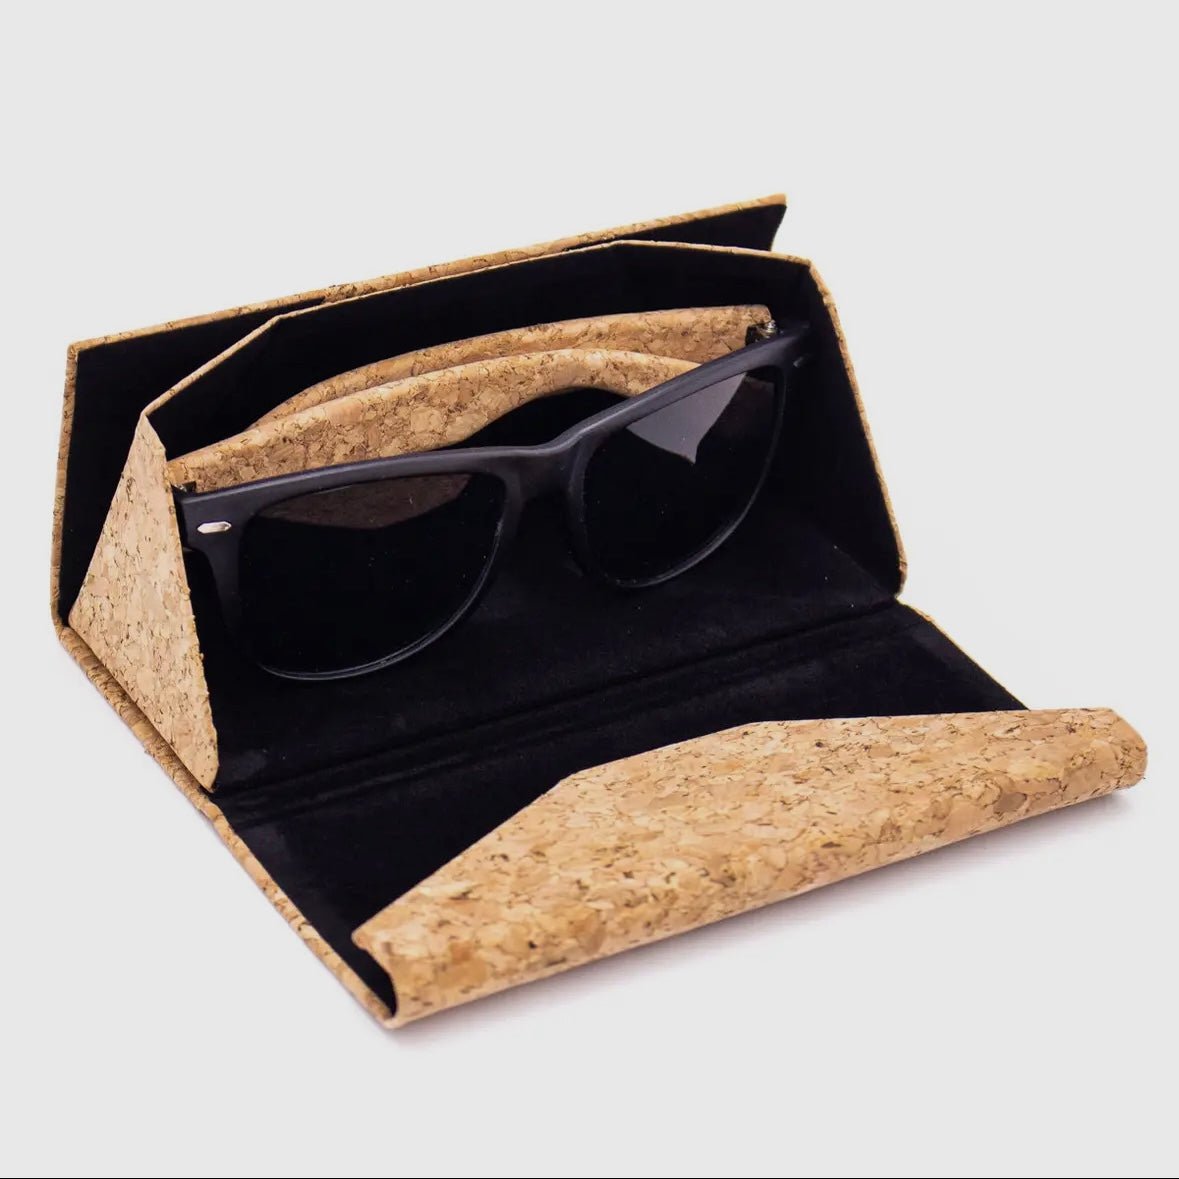 Black Rimmed Cork UV Sunglasses in glasses case - Texas Cork Company